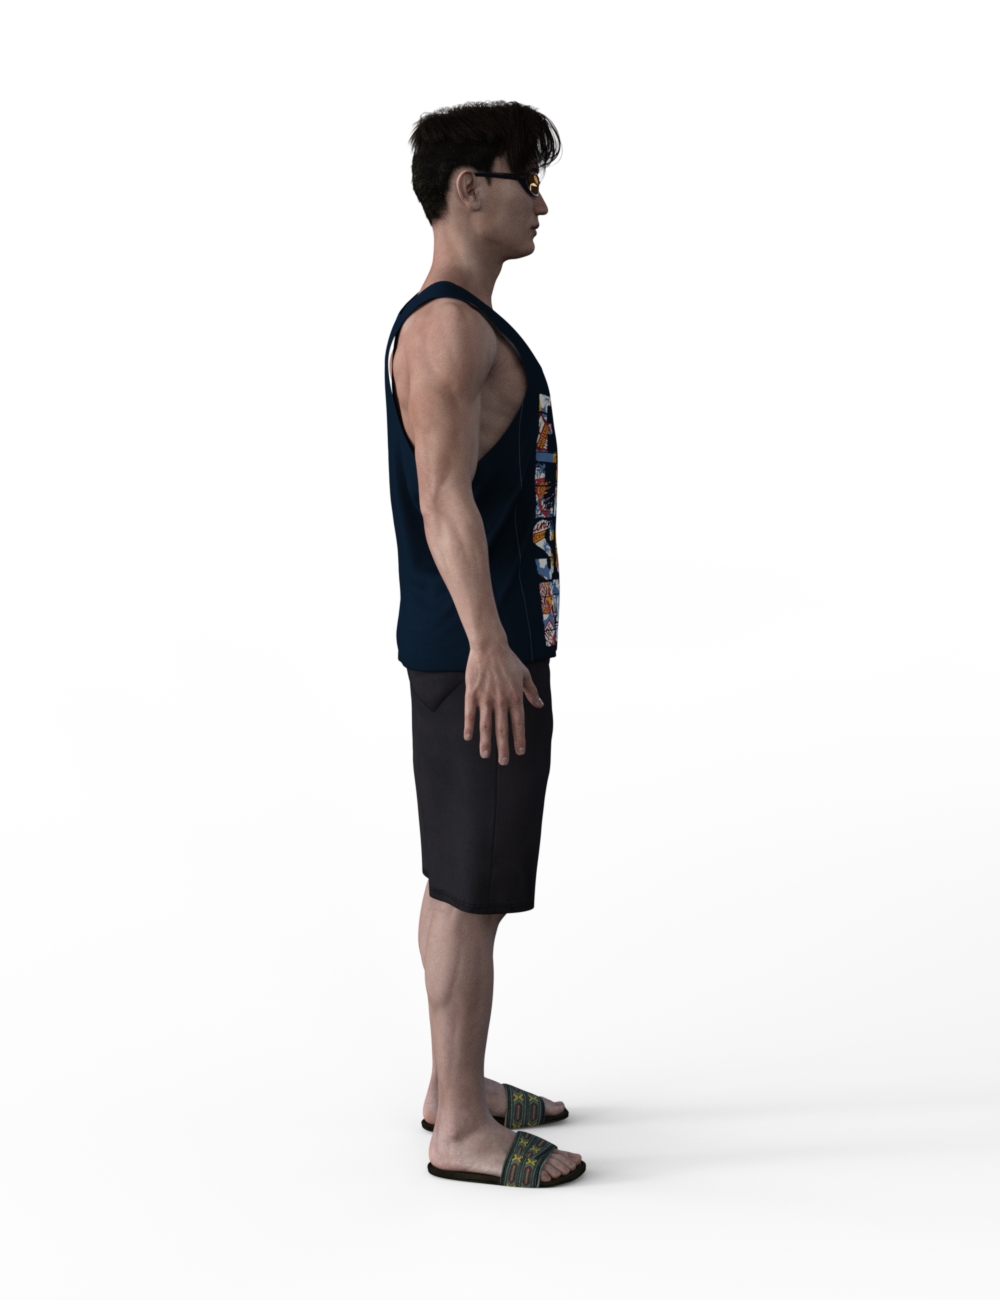 FBX- Lee Male Beach Wear by: Paleo, 3D Models by Daz 3D